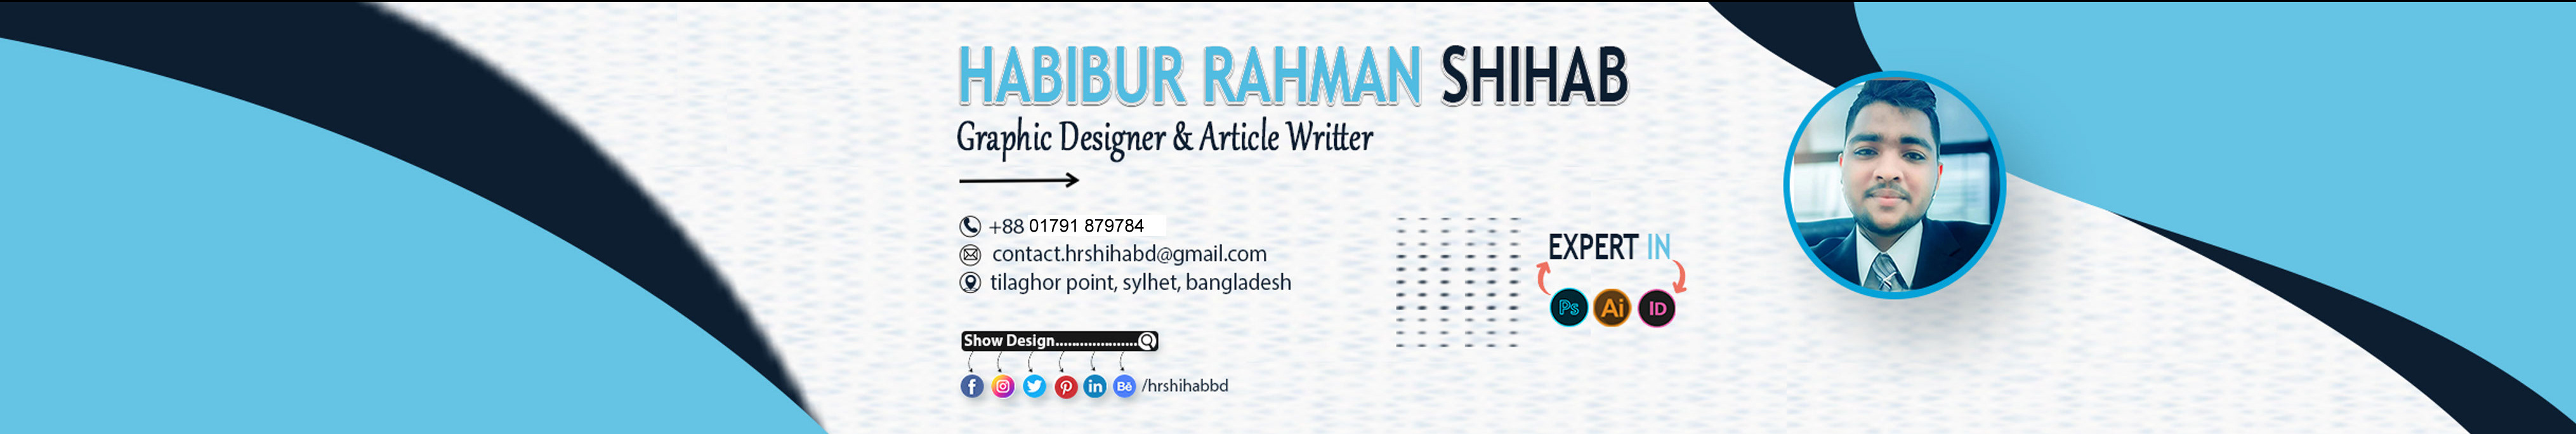 Habibur Rahman Shihab profil başlığı